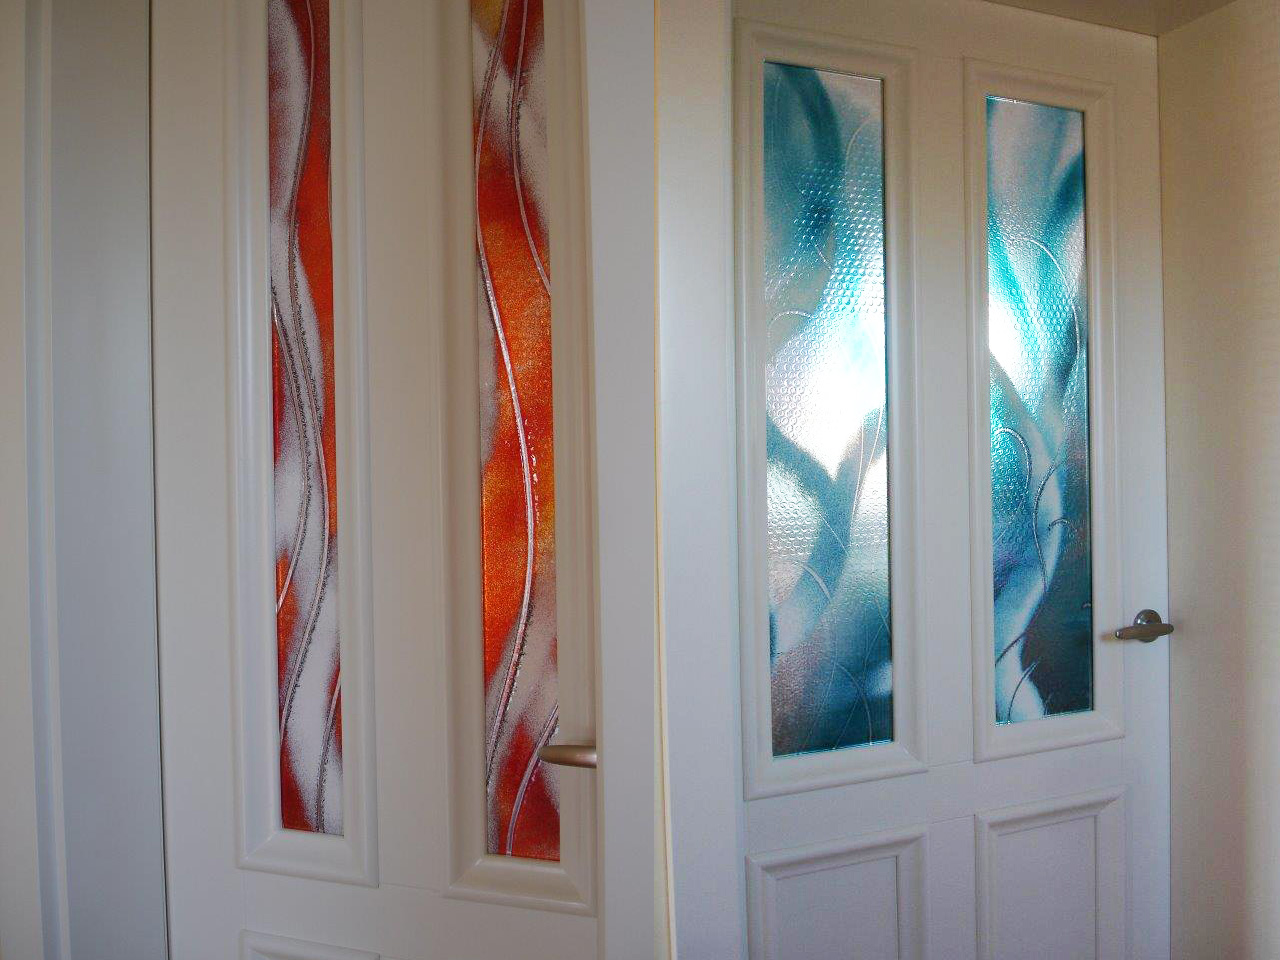 glass in interiorsGlass doors pannels